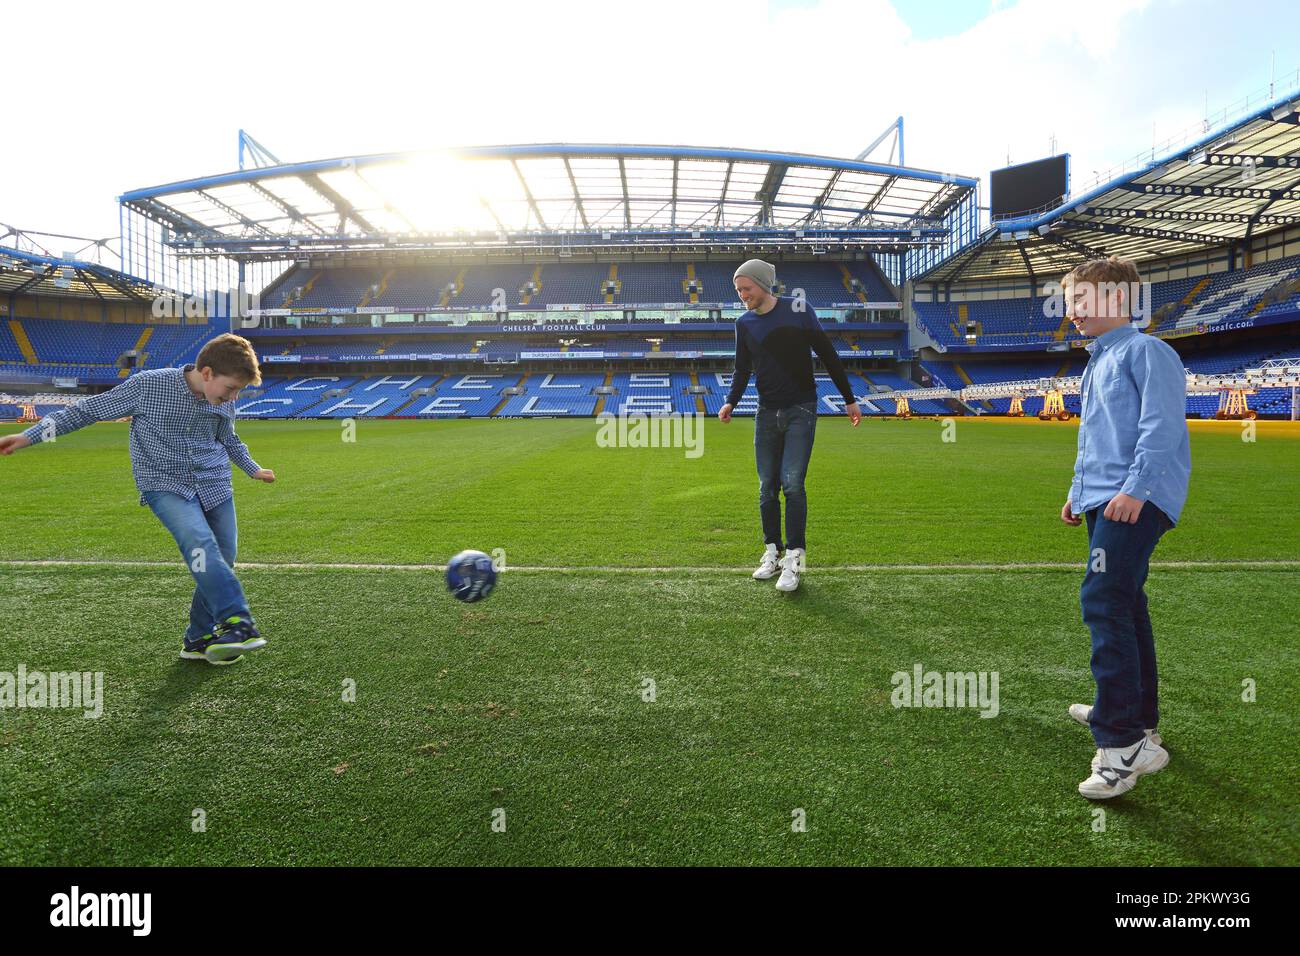 Großbritannien / London / Stamford Bridge / Premier League Club Chelsea / Andre Schuerrle mit Kindern, die im Stadion spielen, 13. Februar 2014. Stockfoto